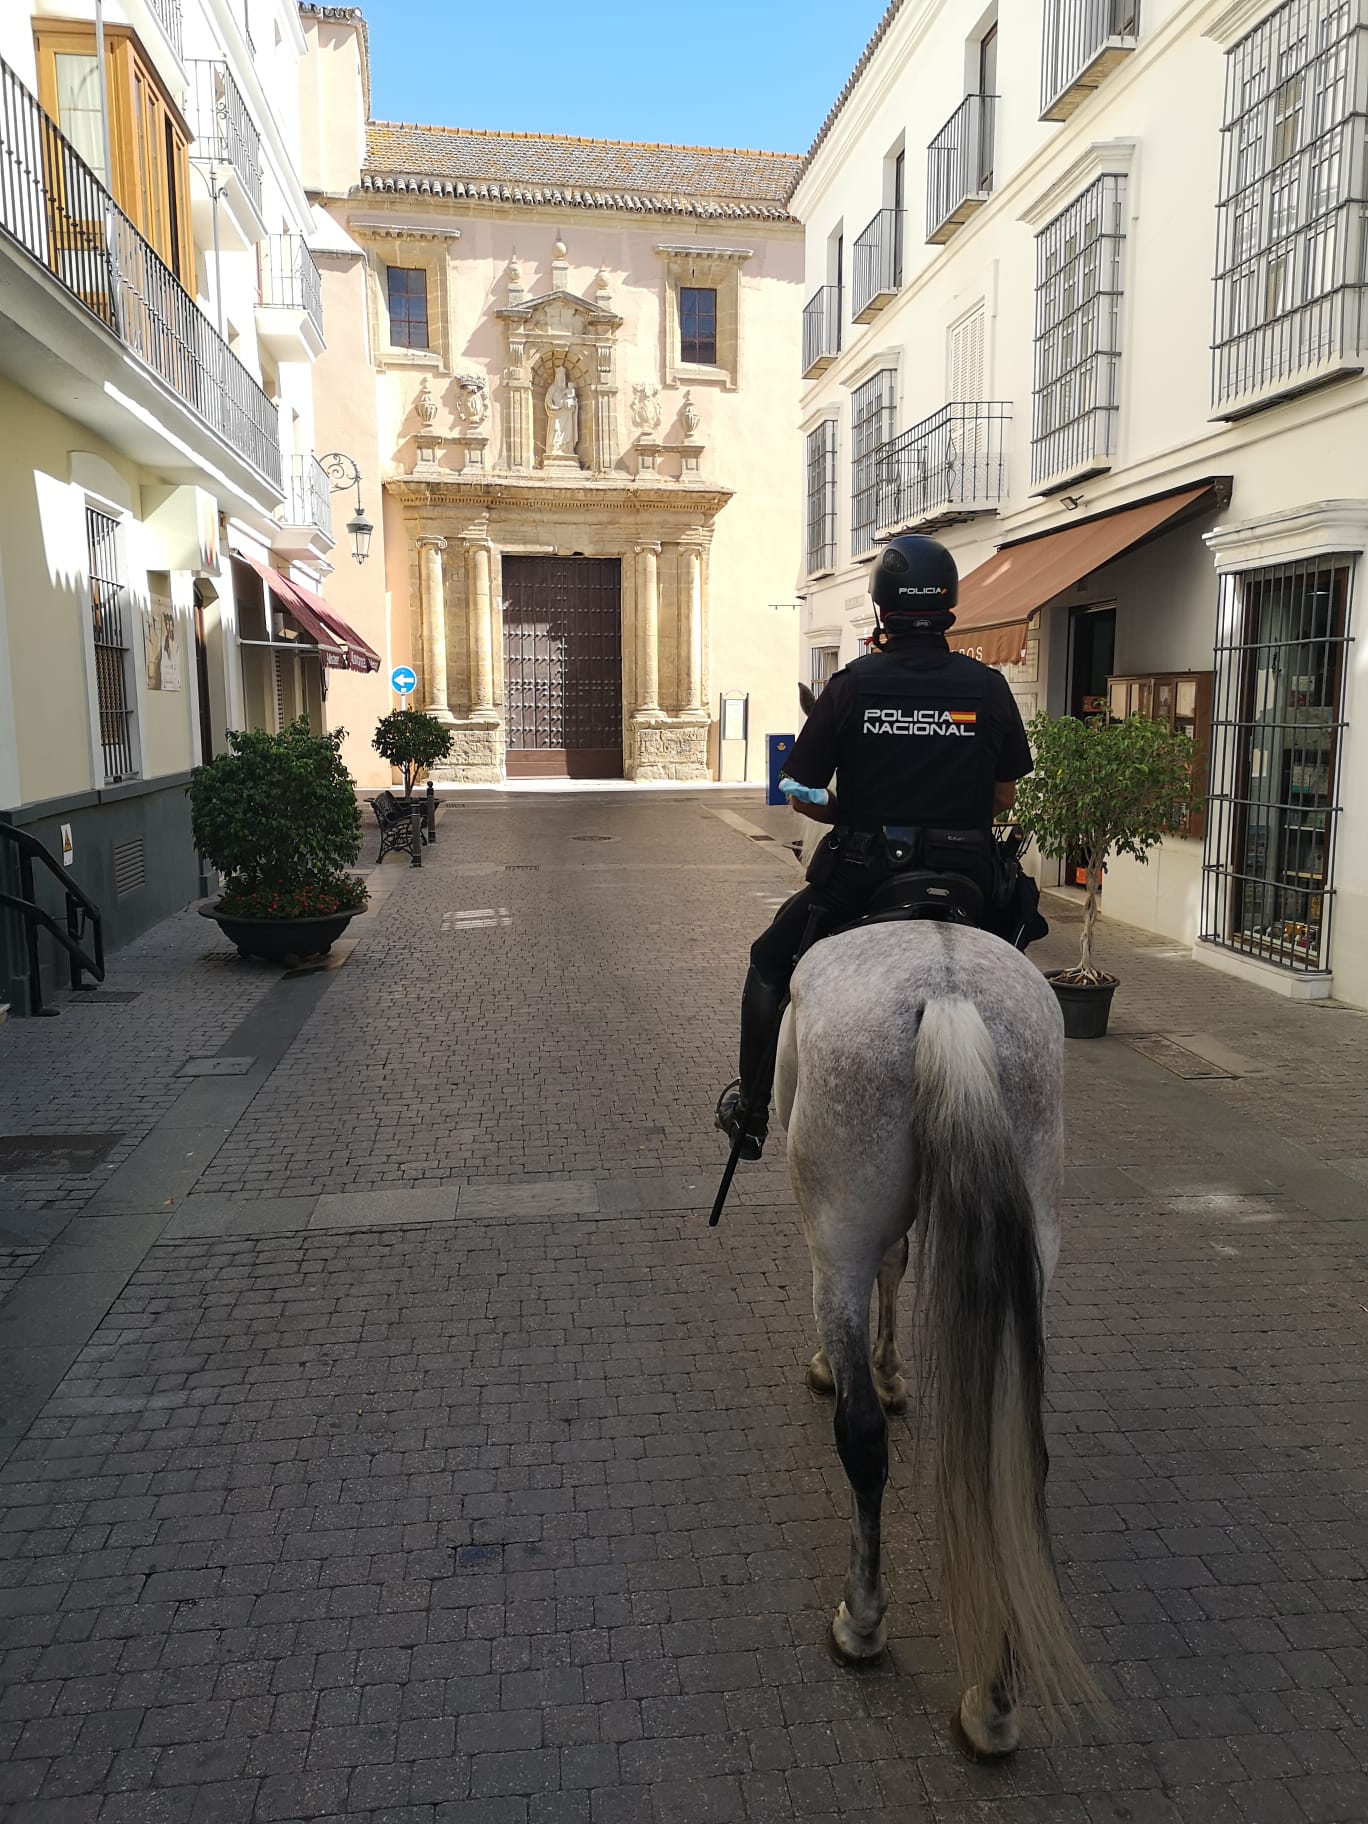 Un policía a caballo patrullando una calle empedrada